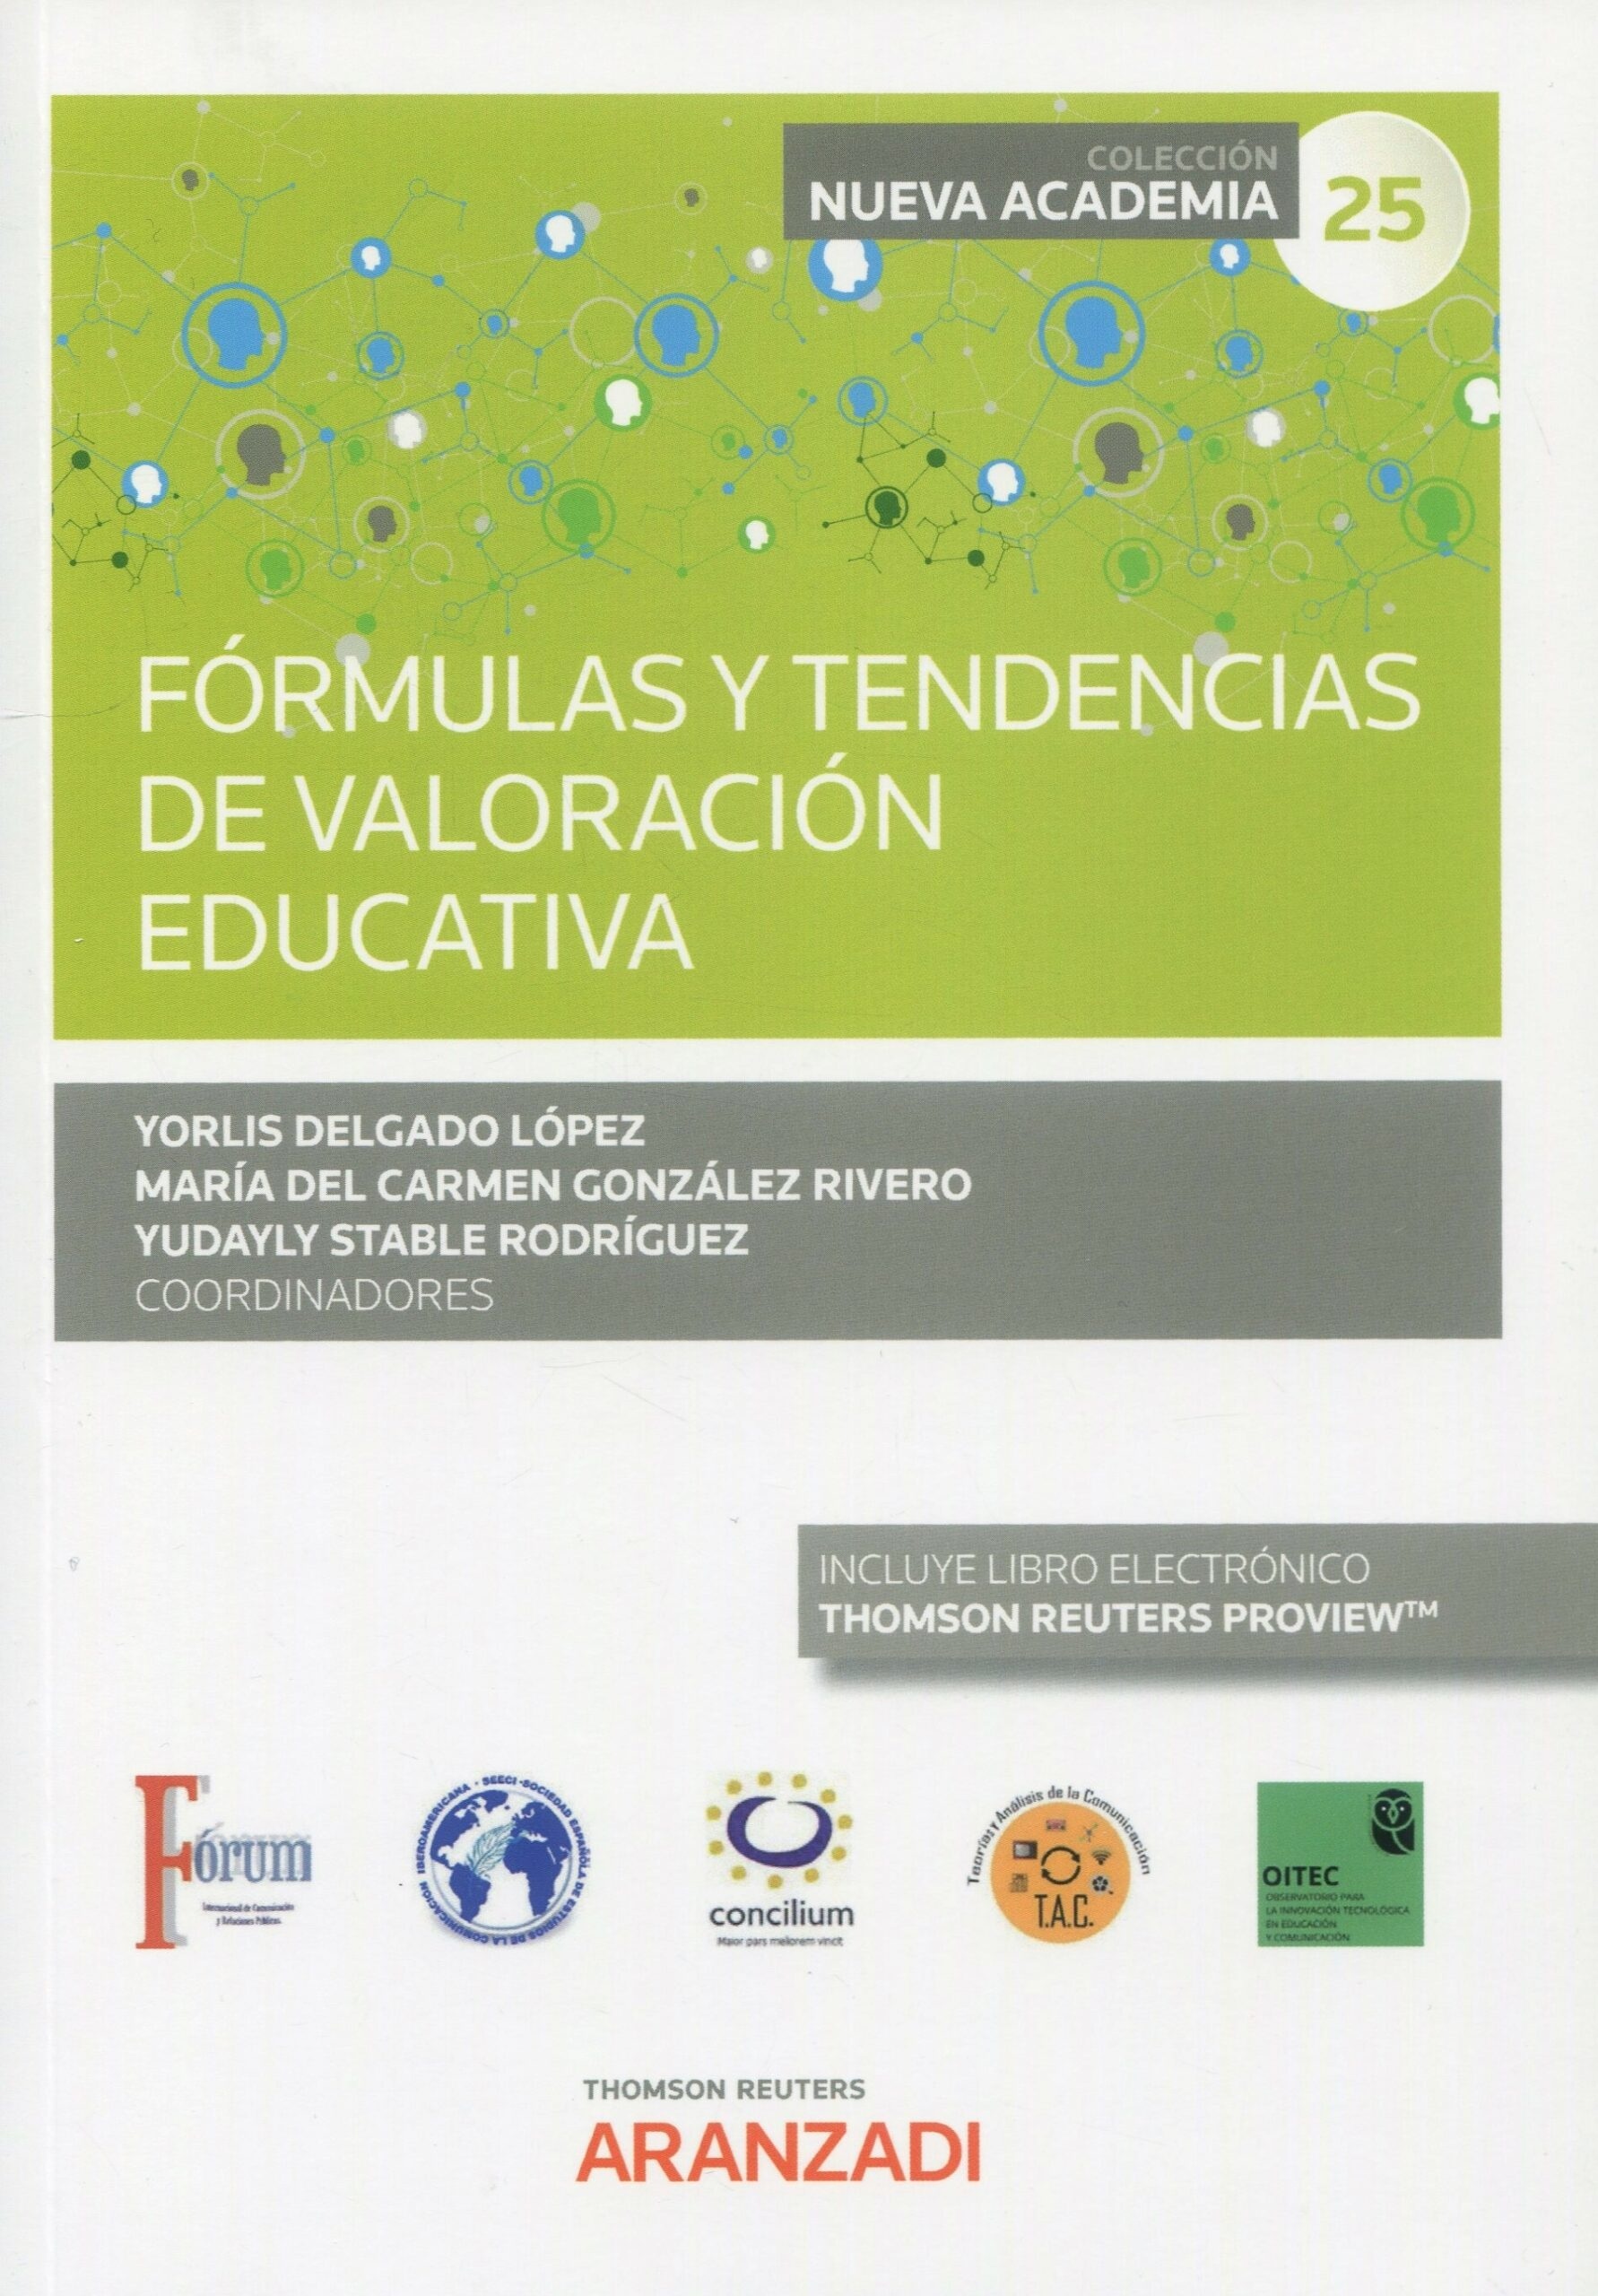 Fórmulas y tendencias de valoración educativa. (Congreso forum núm. 25)